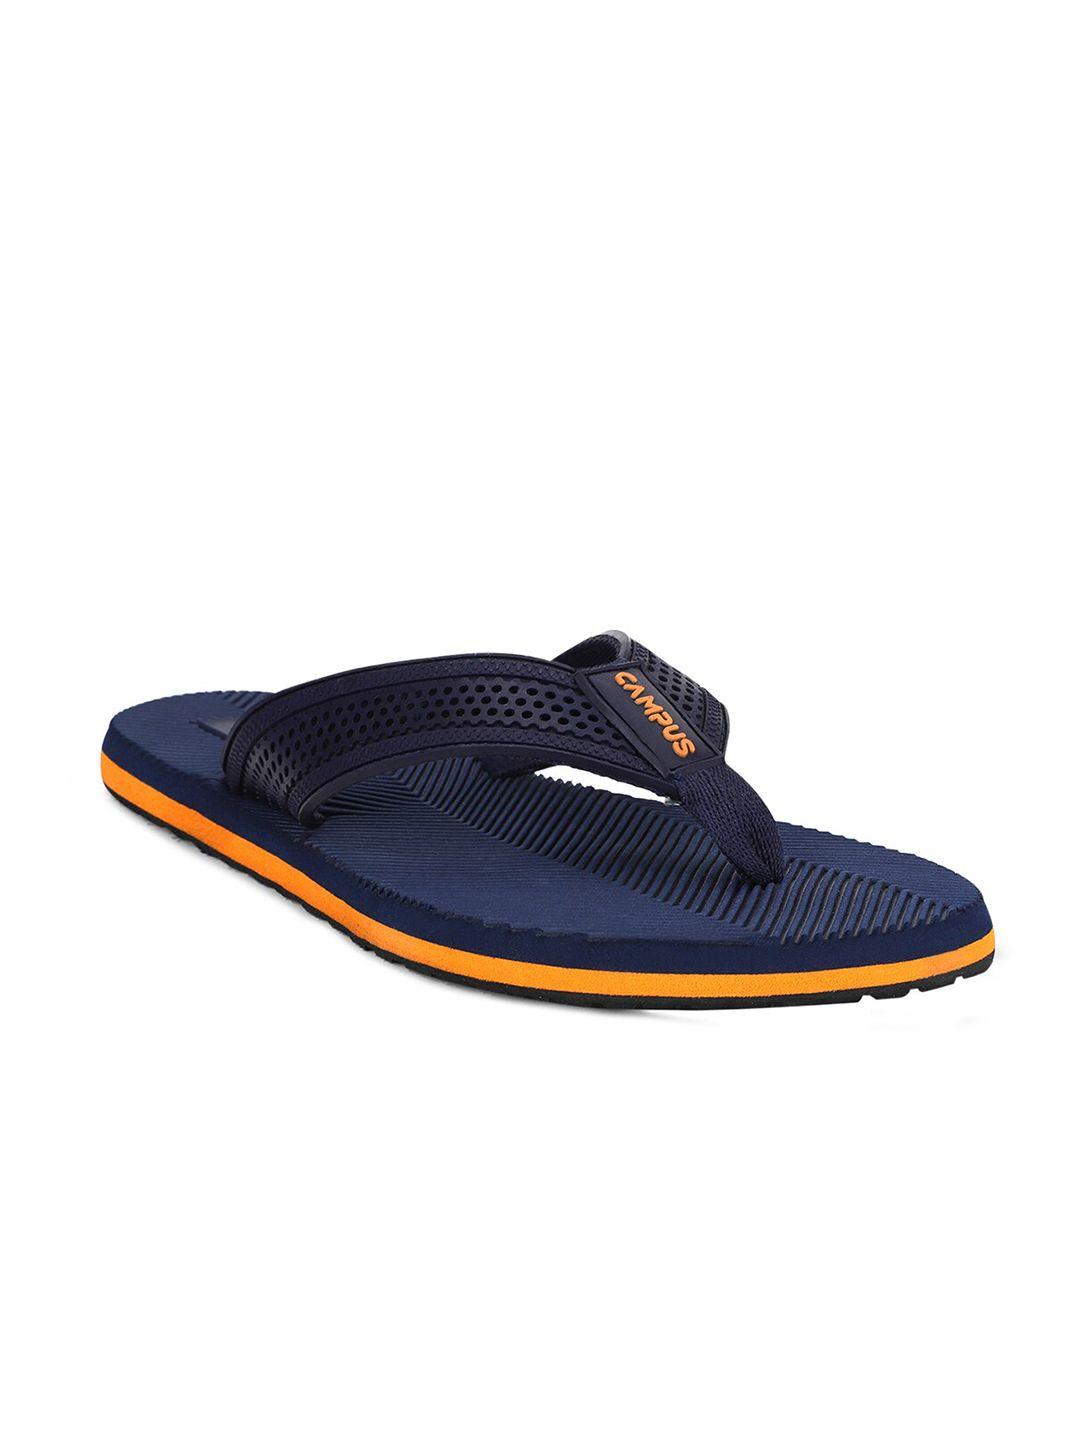 campus-men-navy-blue-&-orange-thong-flip-flops